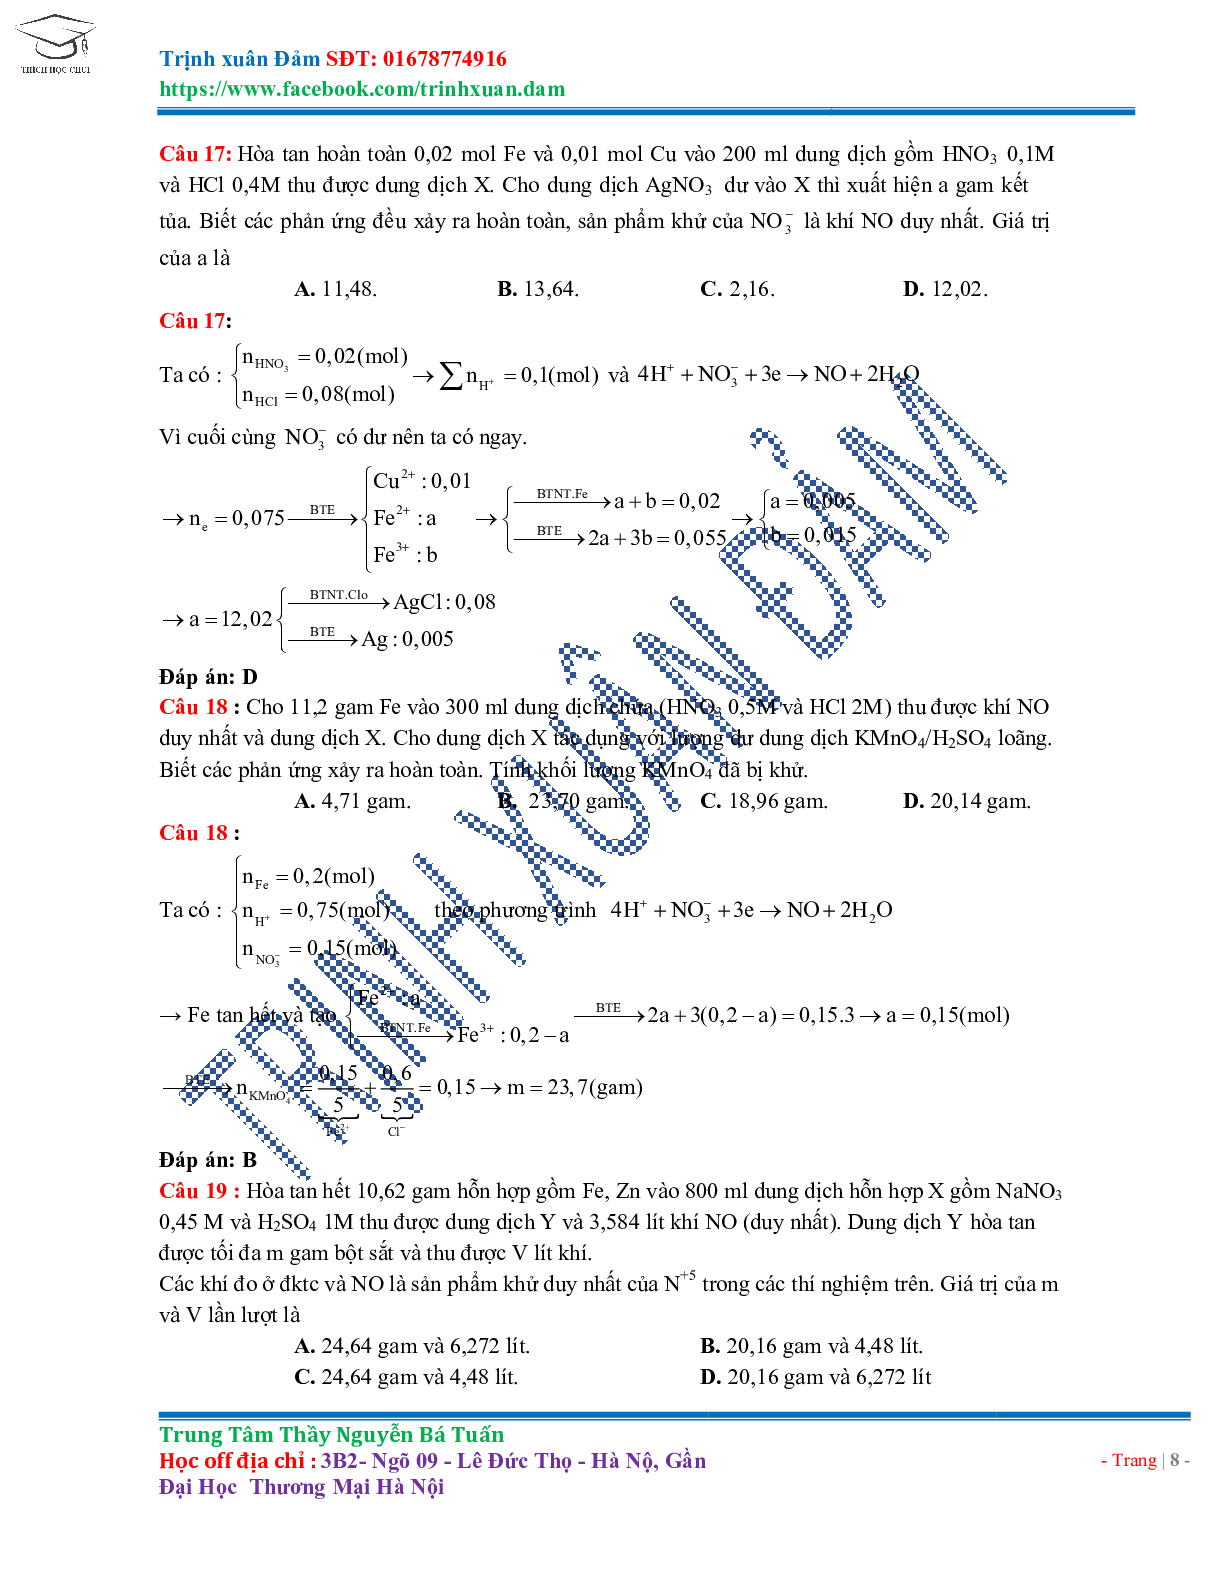 Bài toán chuyên đề HNO3 môn Hóa học lớp 11 (trang 8)